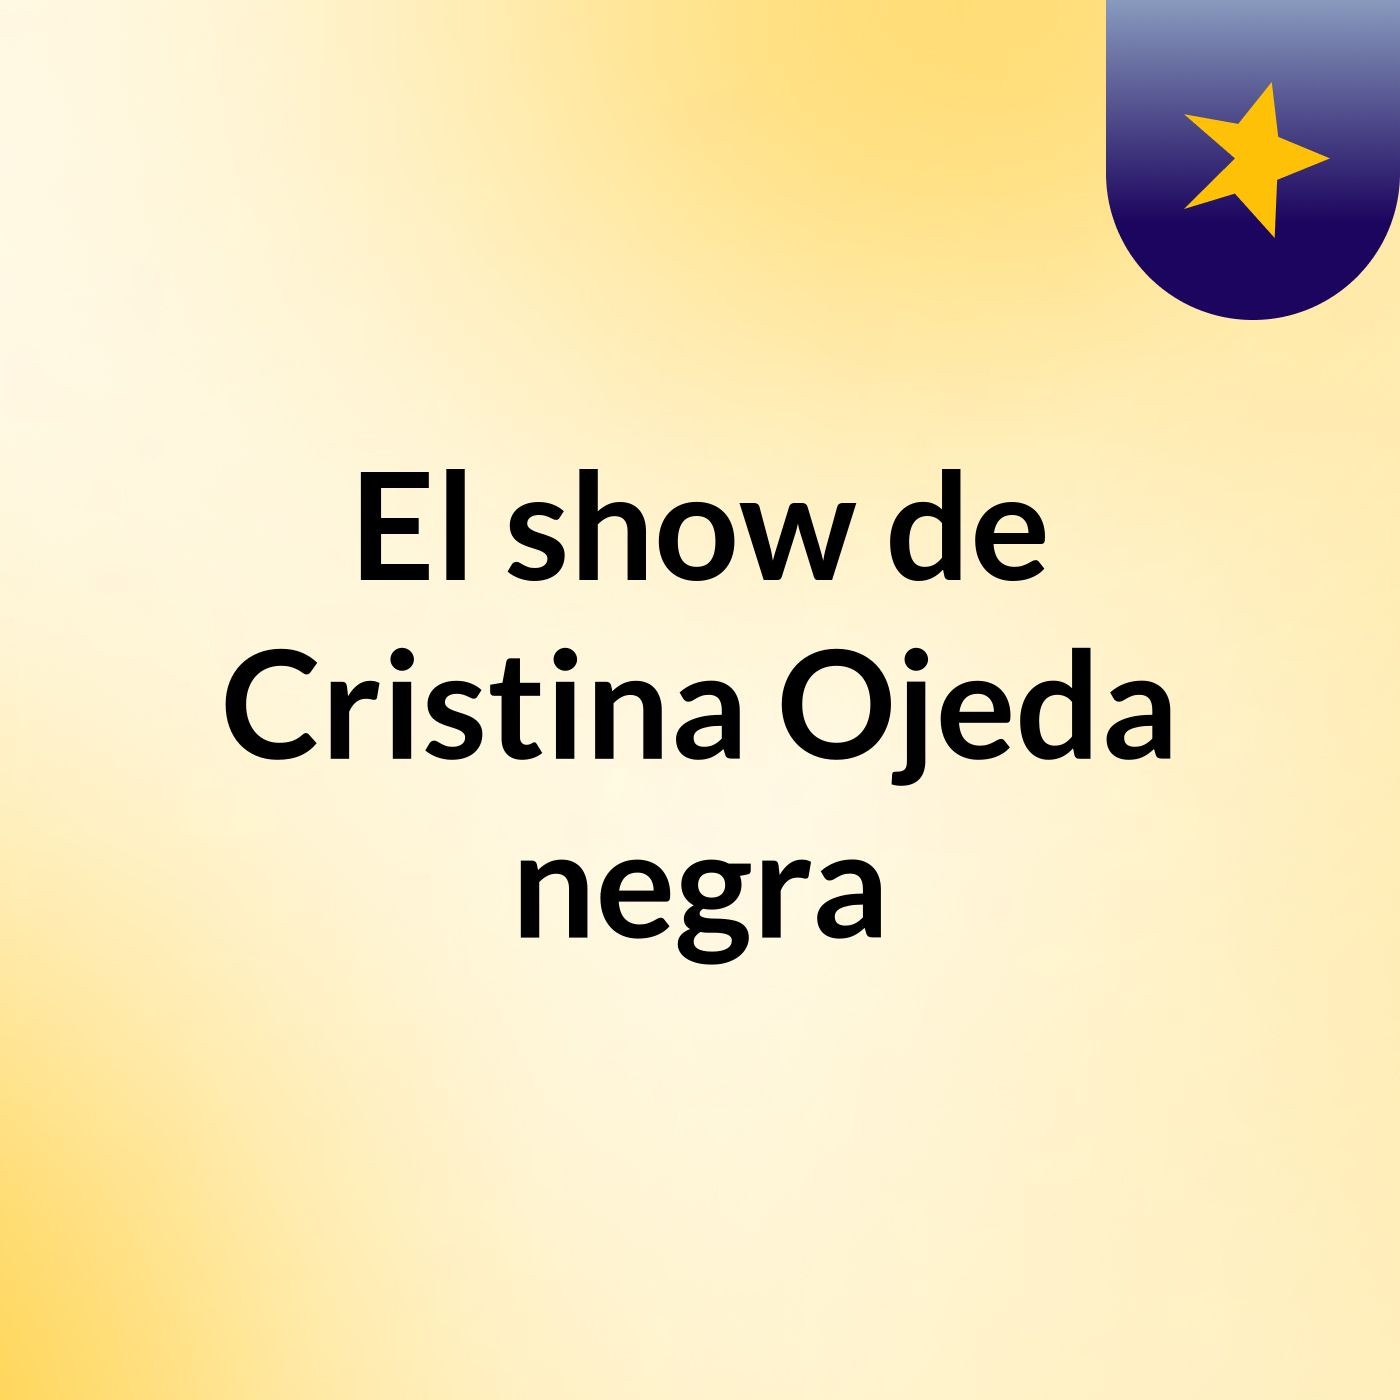 El show de Cristina Ojeda negra